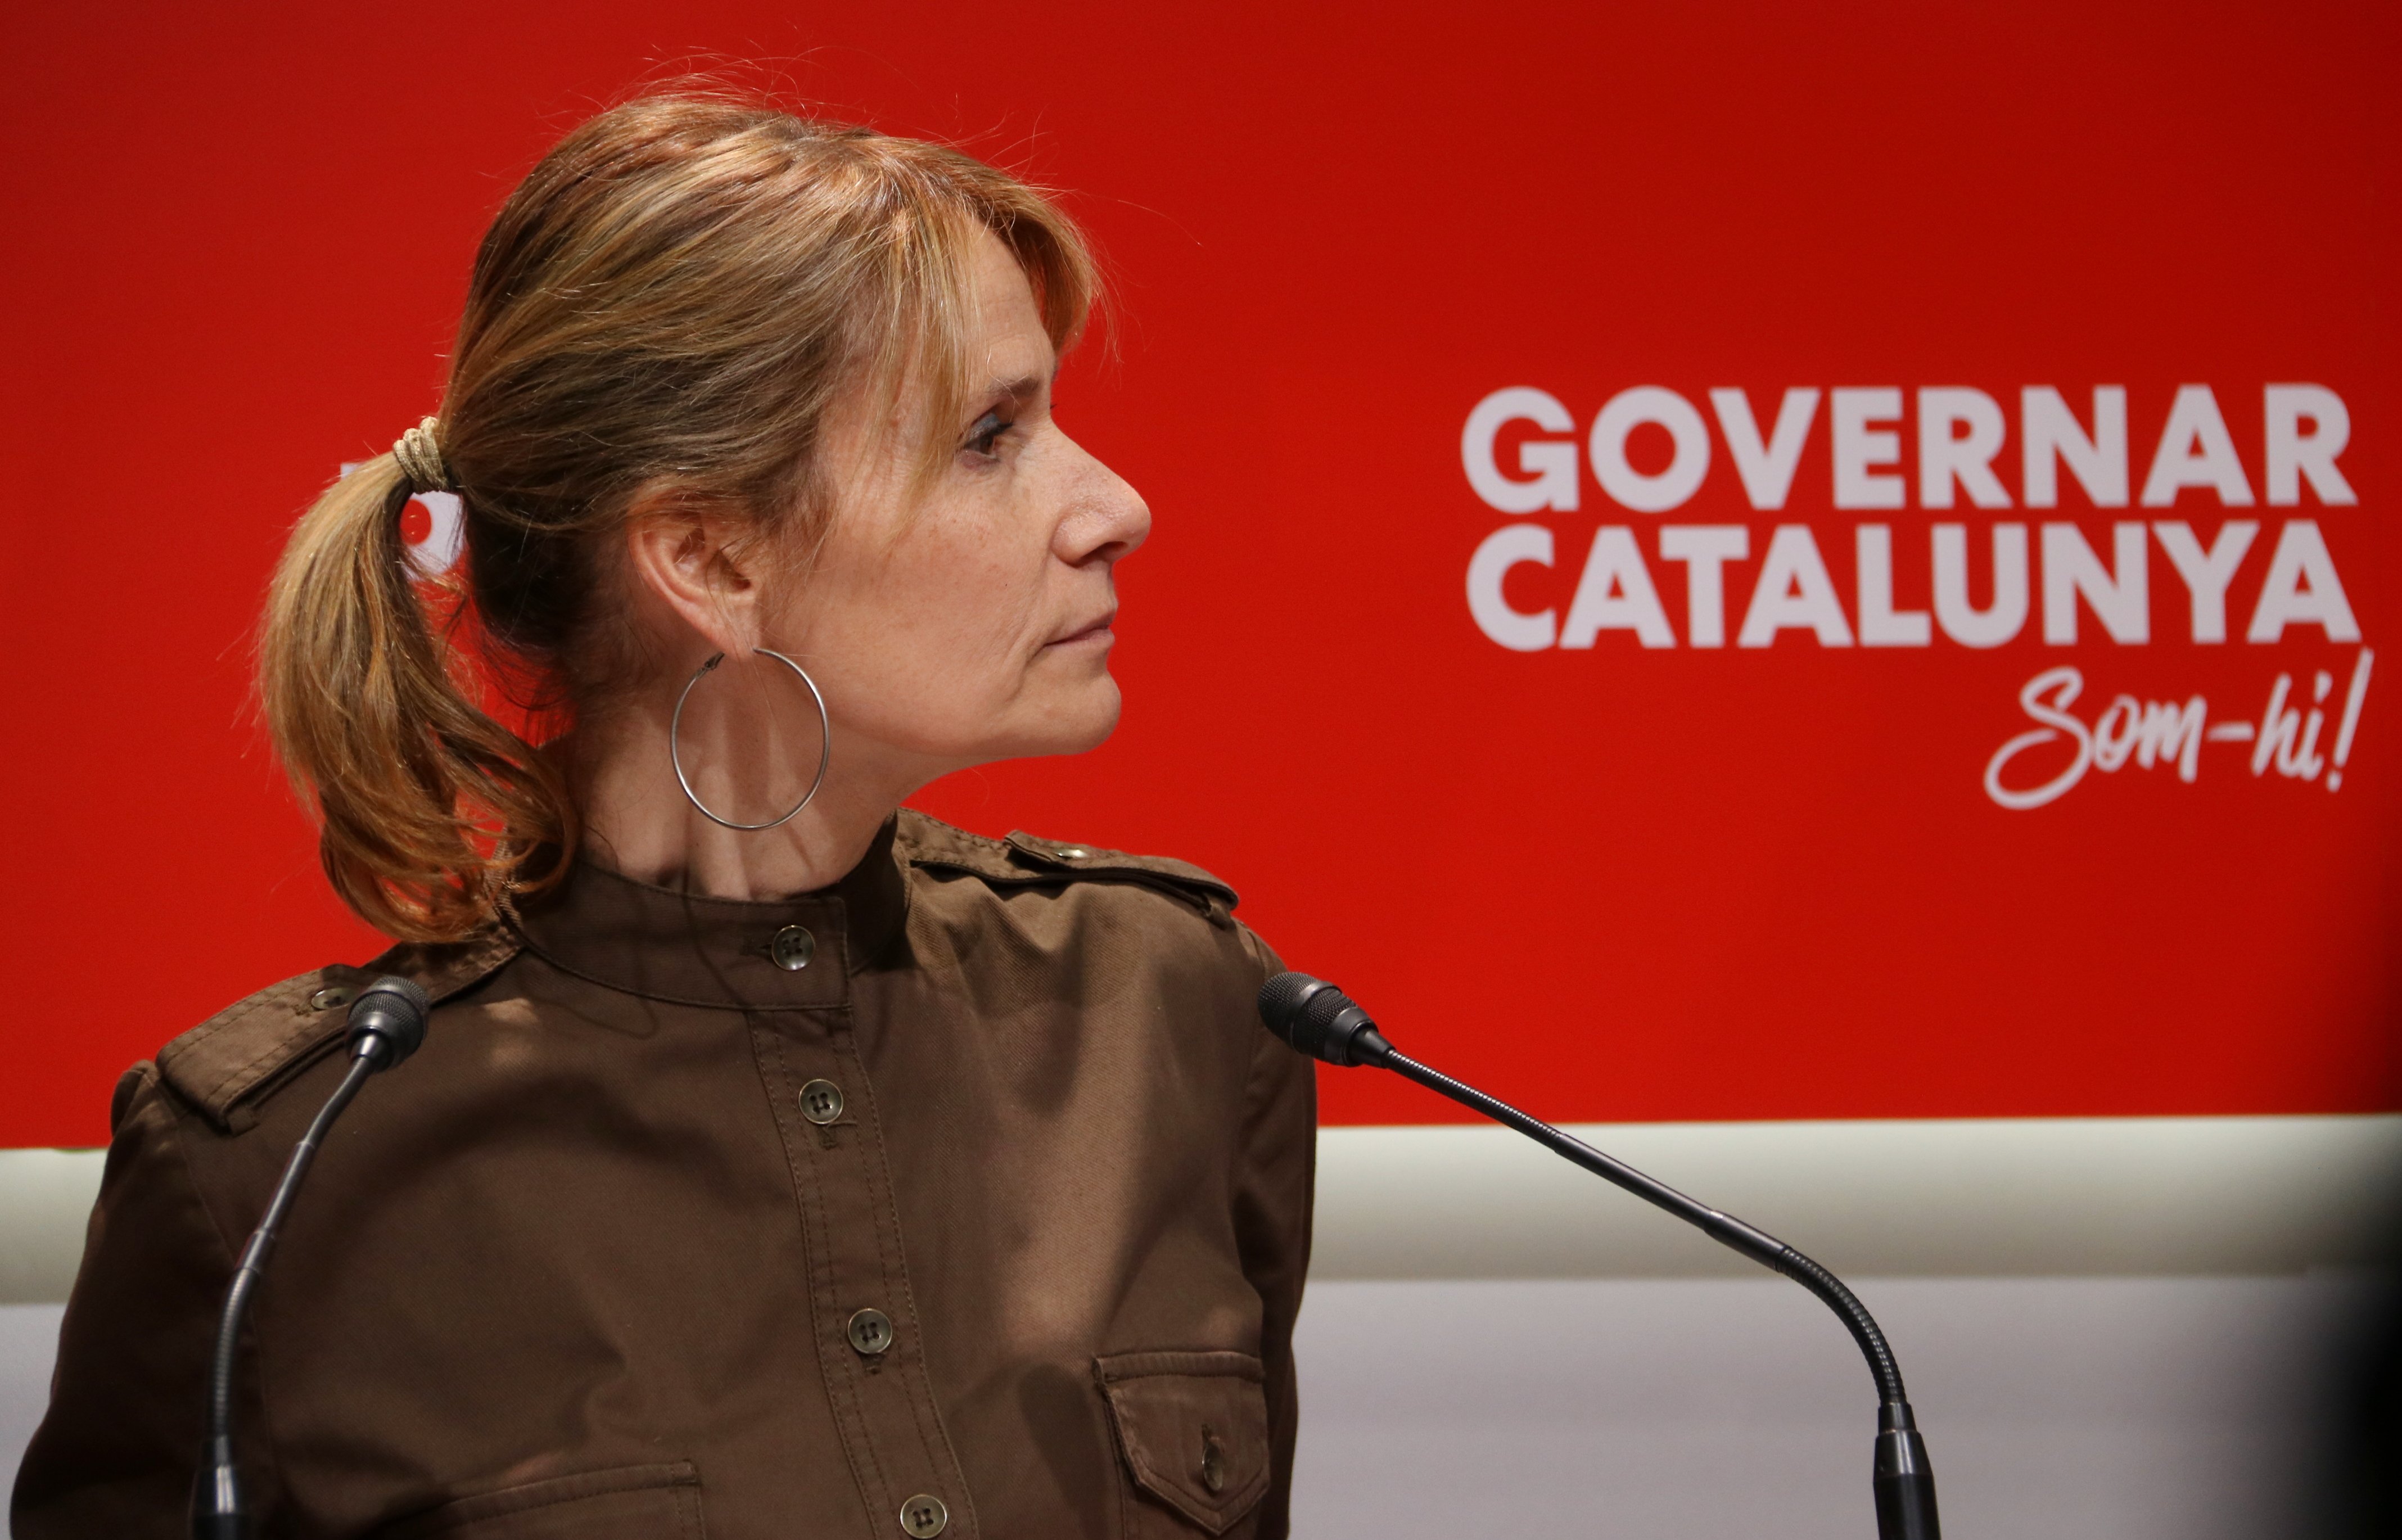 El PSC insiste en el acuerdo inicial por el catalán: "Nos ayuda a cumplir mejor la sentencia"